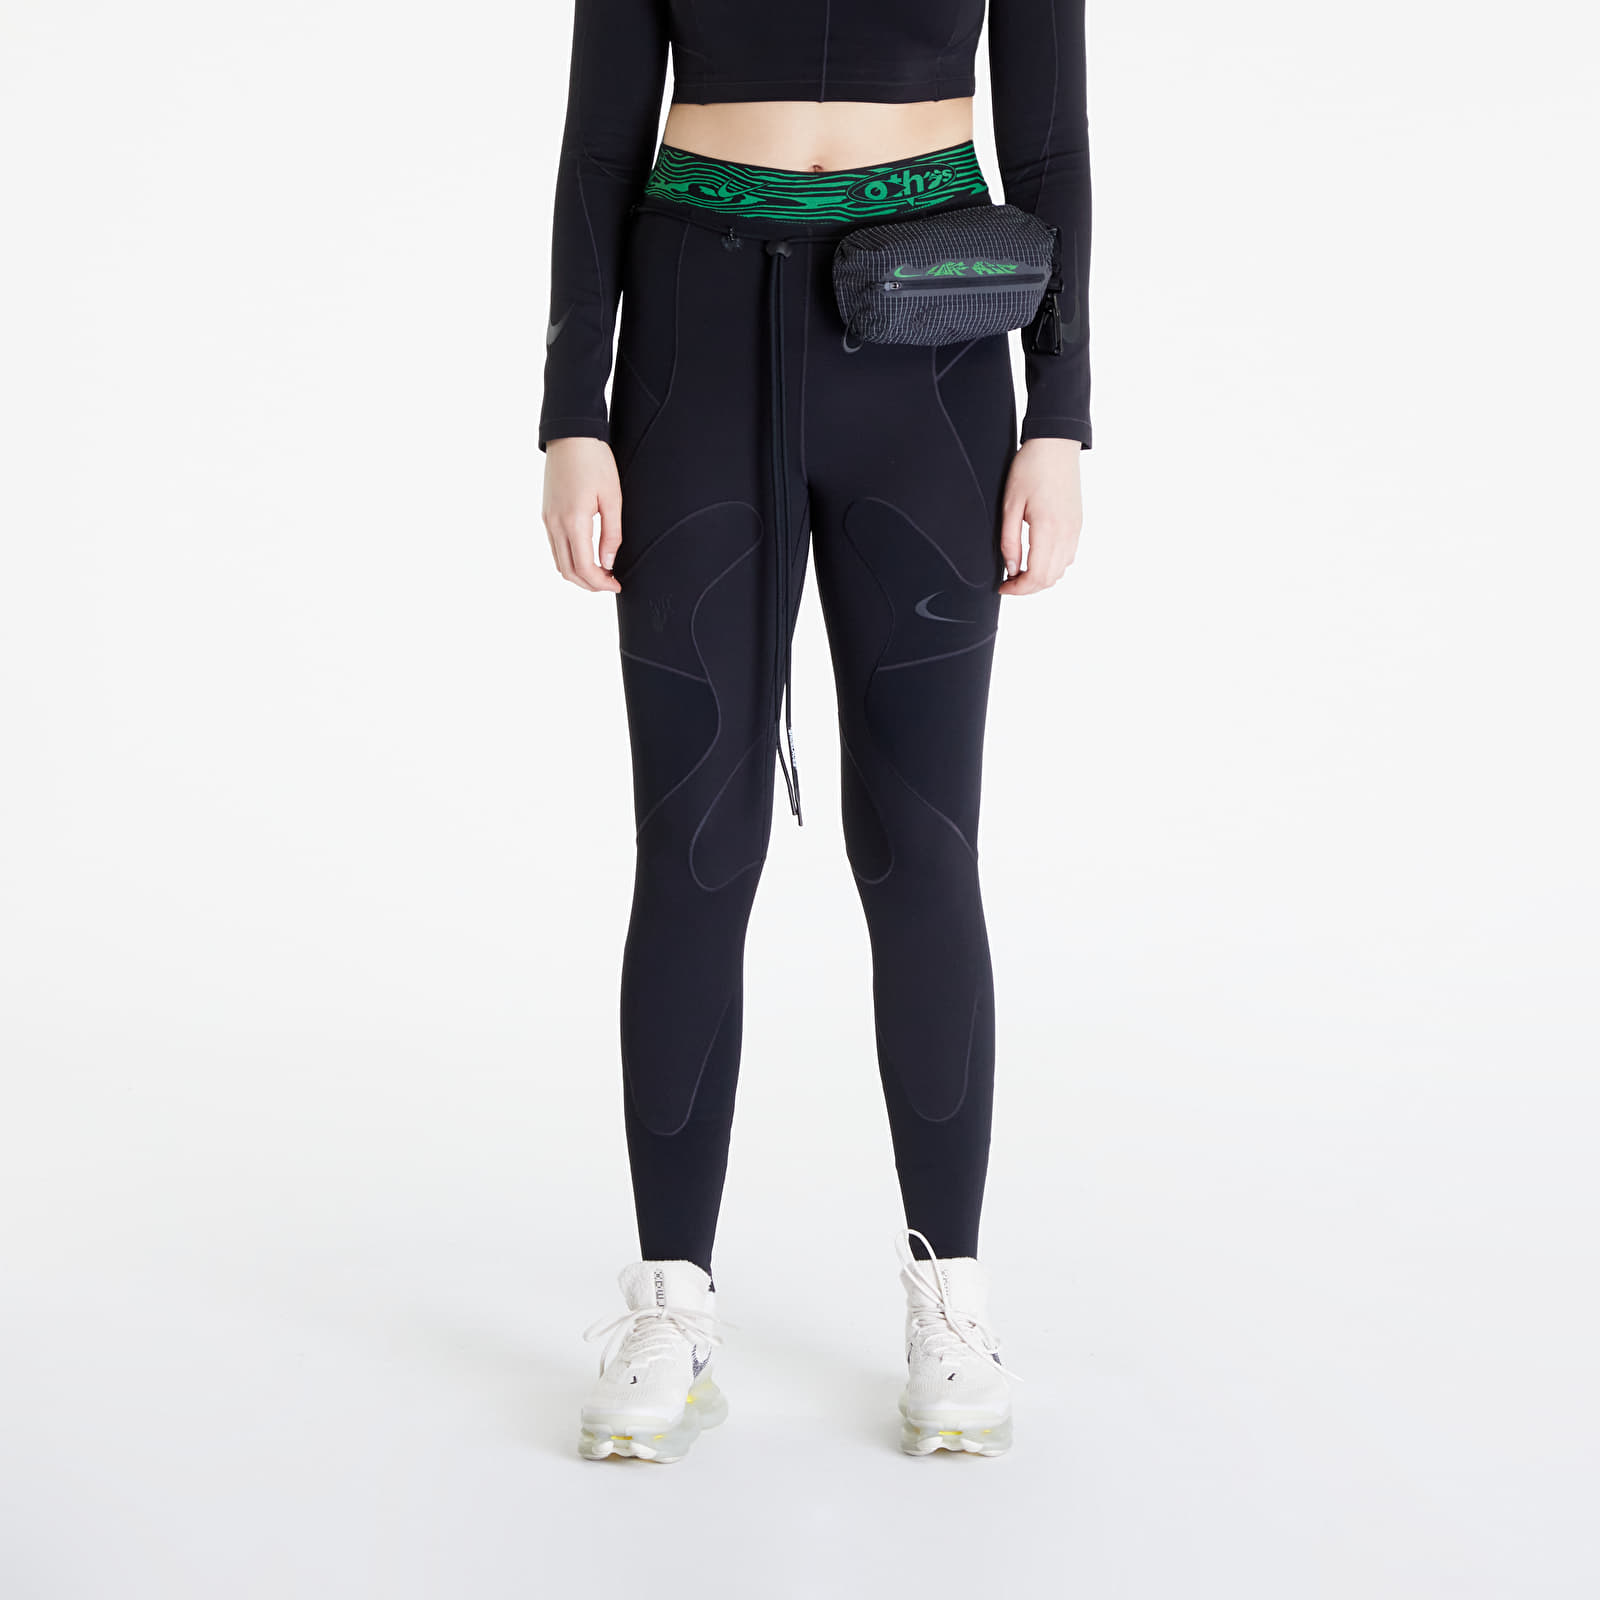 Nike - x off-white™ women's leggings black